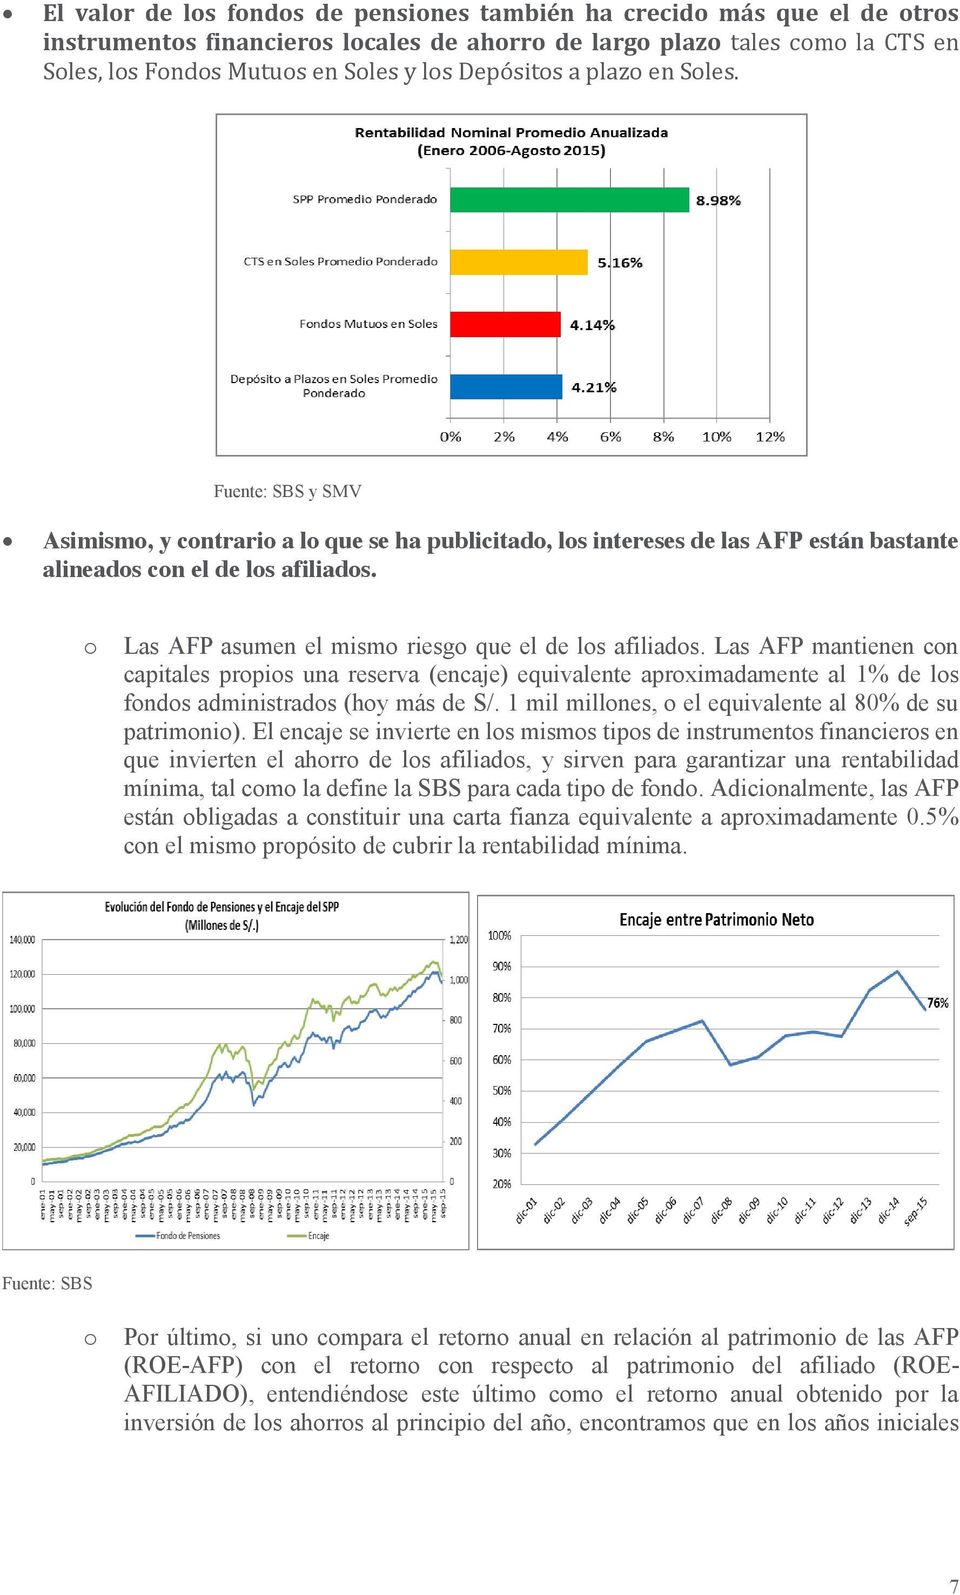 Las AFP mantienen cn capitales prpis una reserva (encaje) equivalente aprximadamente al 1% de ls fnds administrads (hy más de S/. 1 mil millnes, el equivalente al 80% de su patrimni).